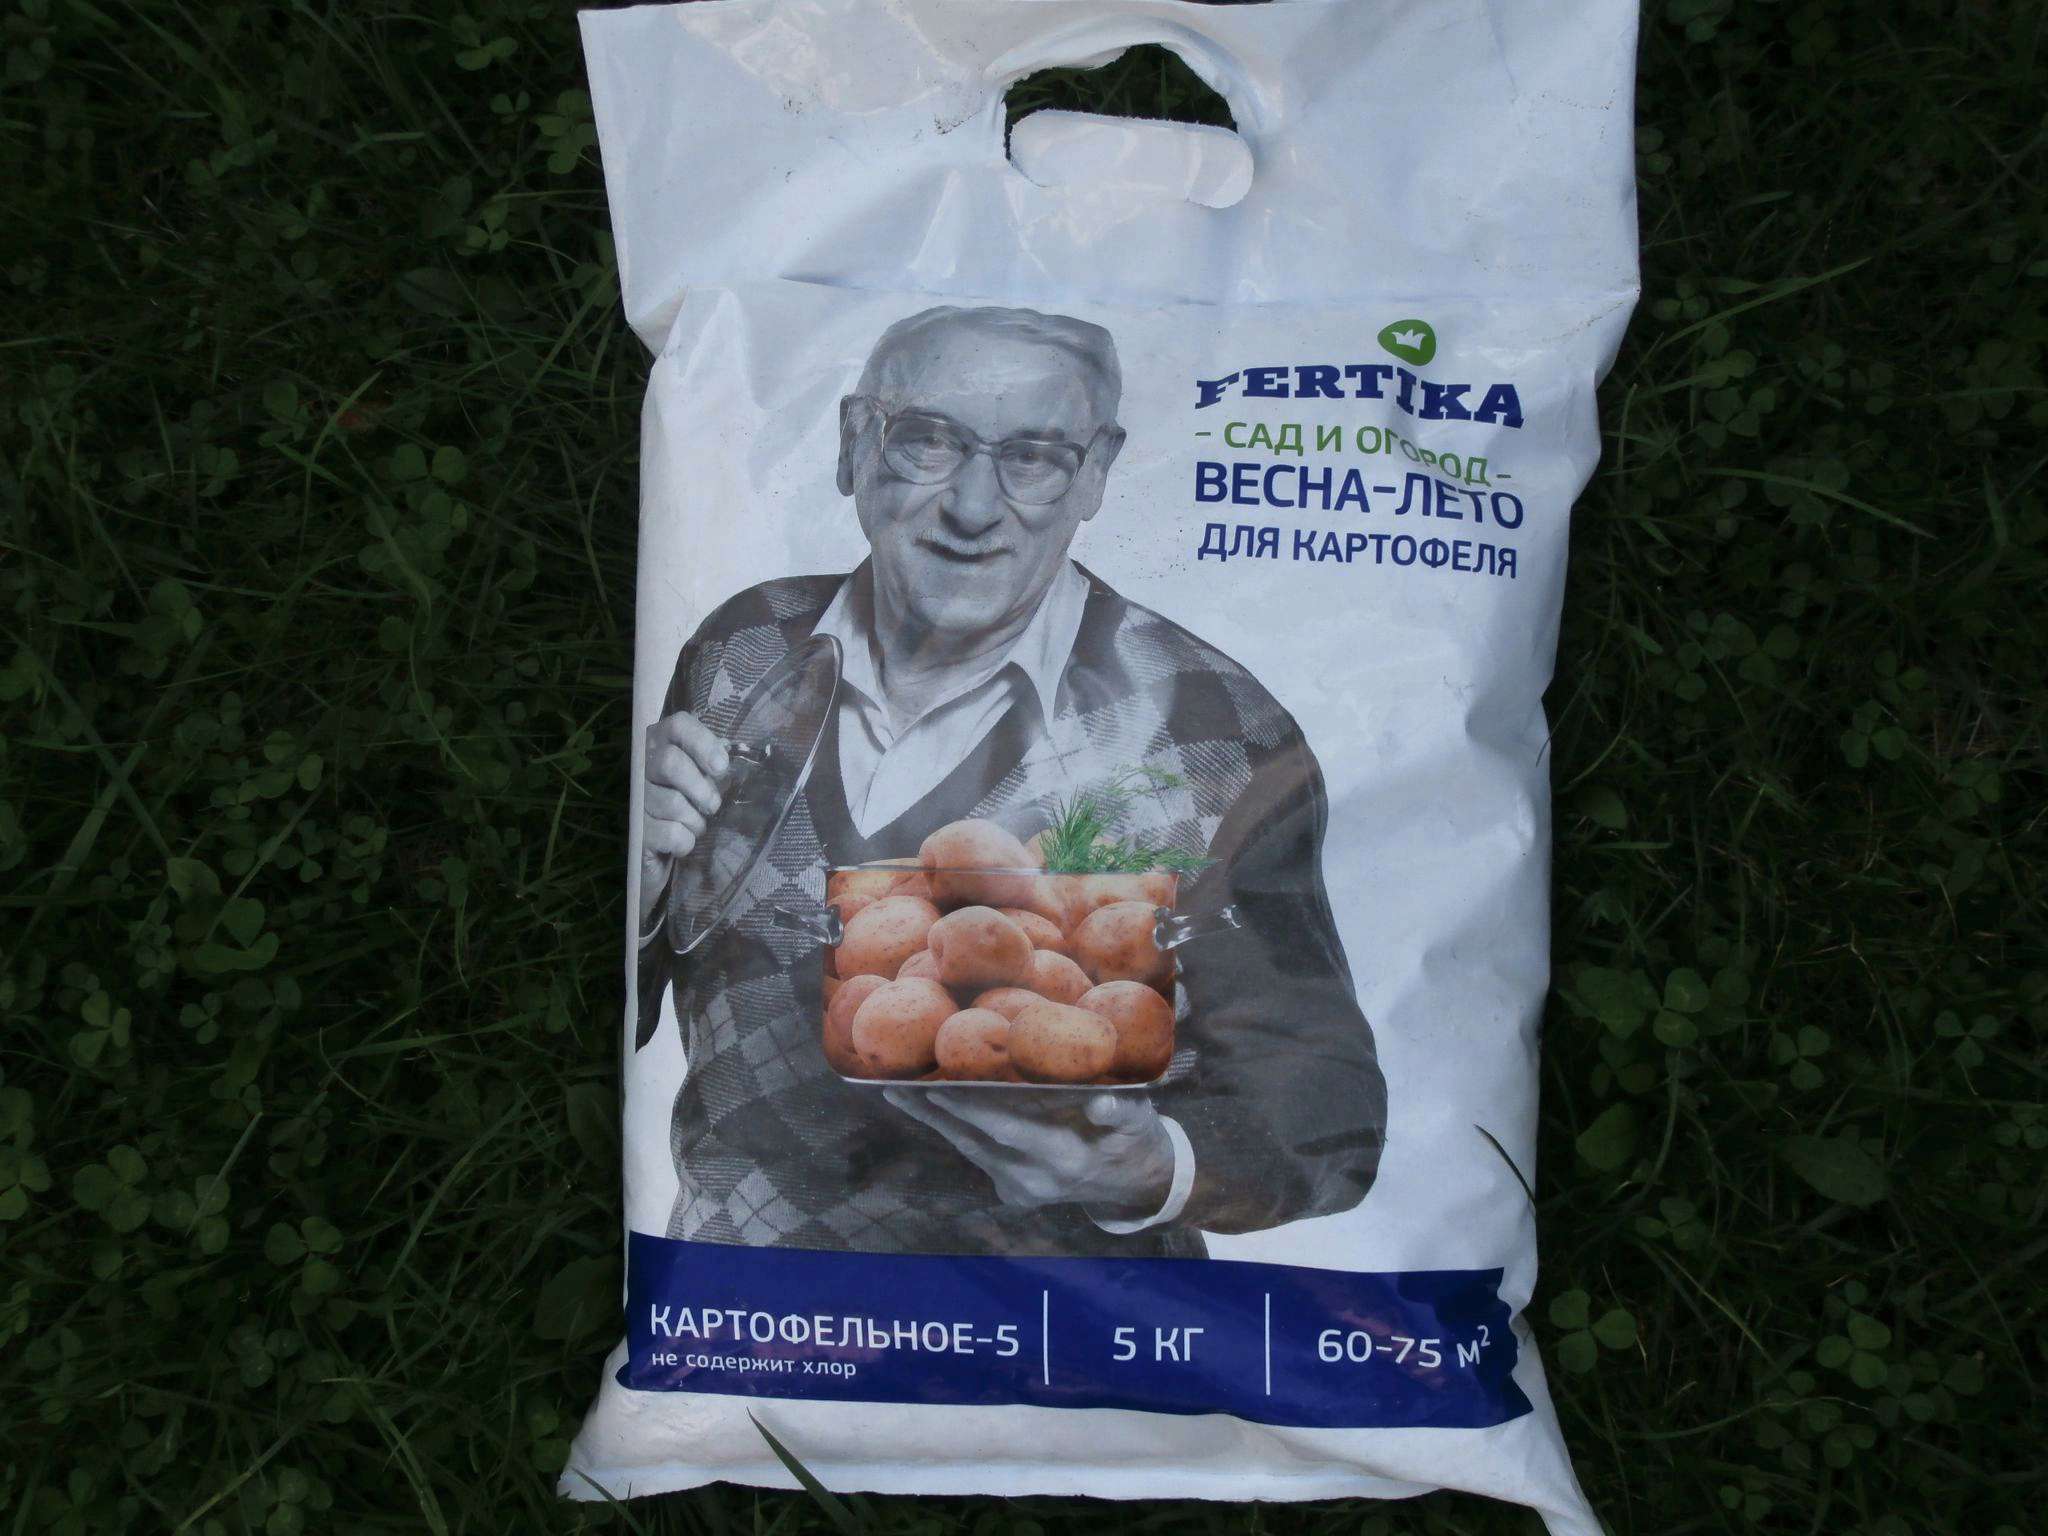 Удобрение Fertika картофельное-5